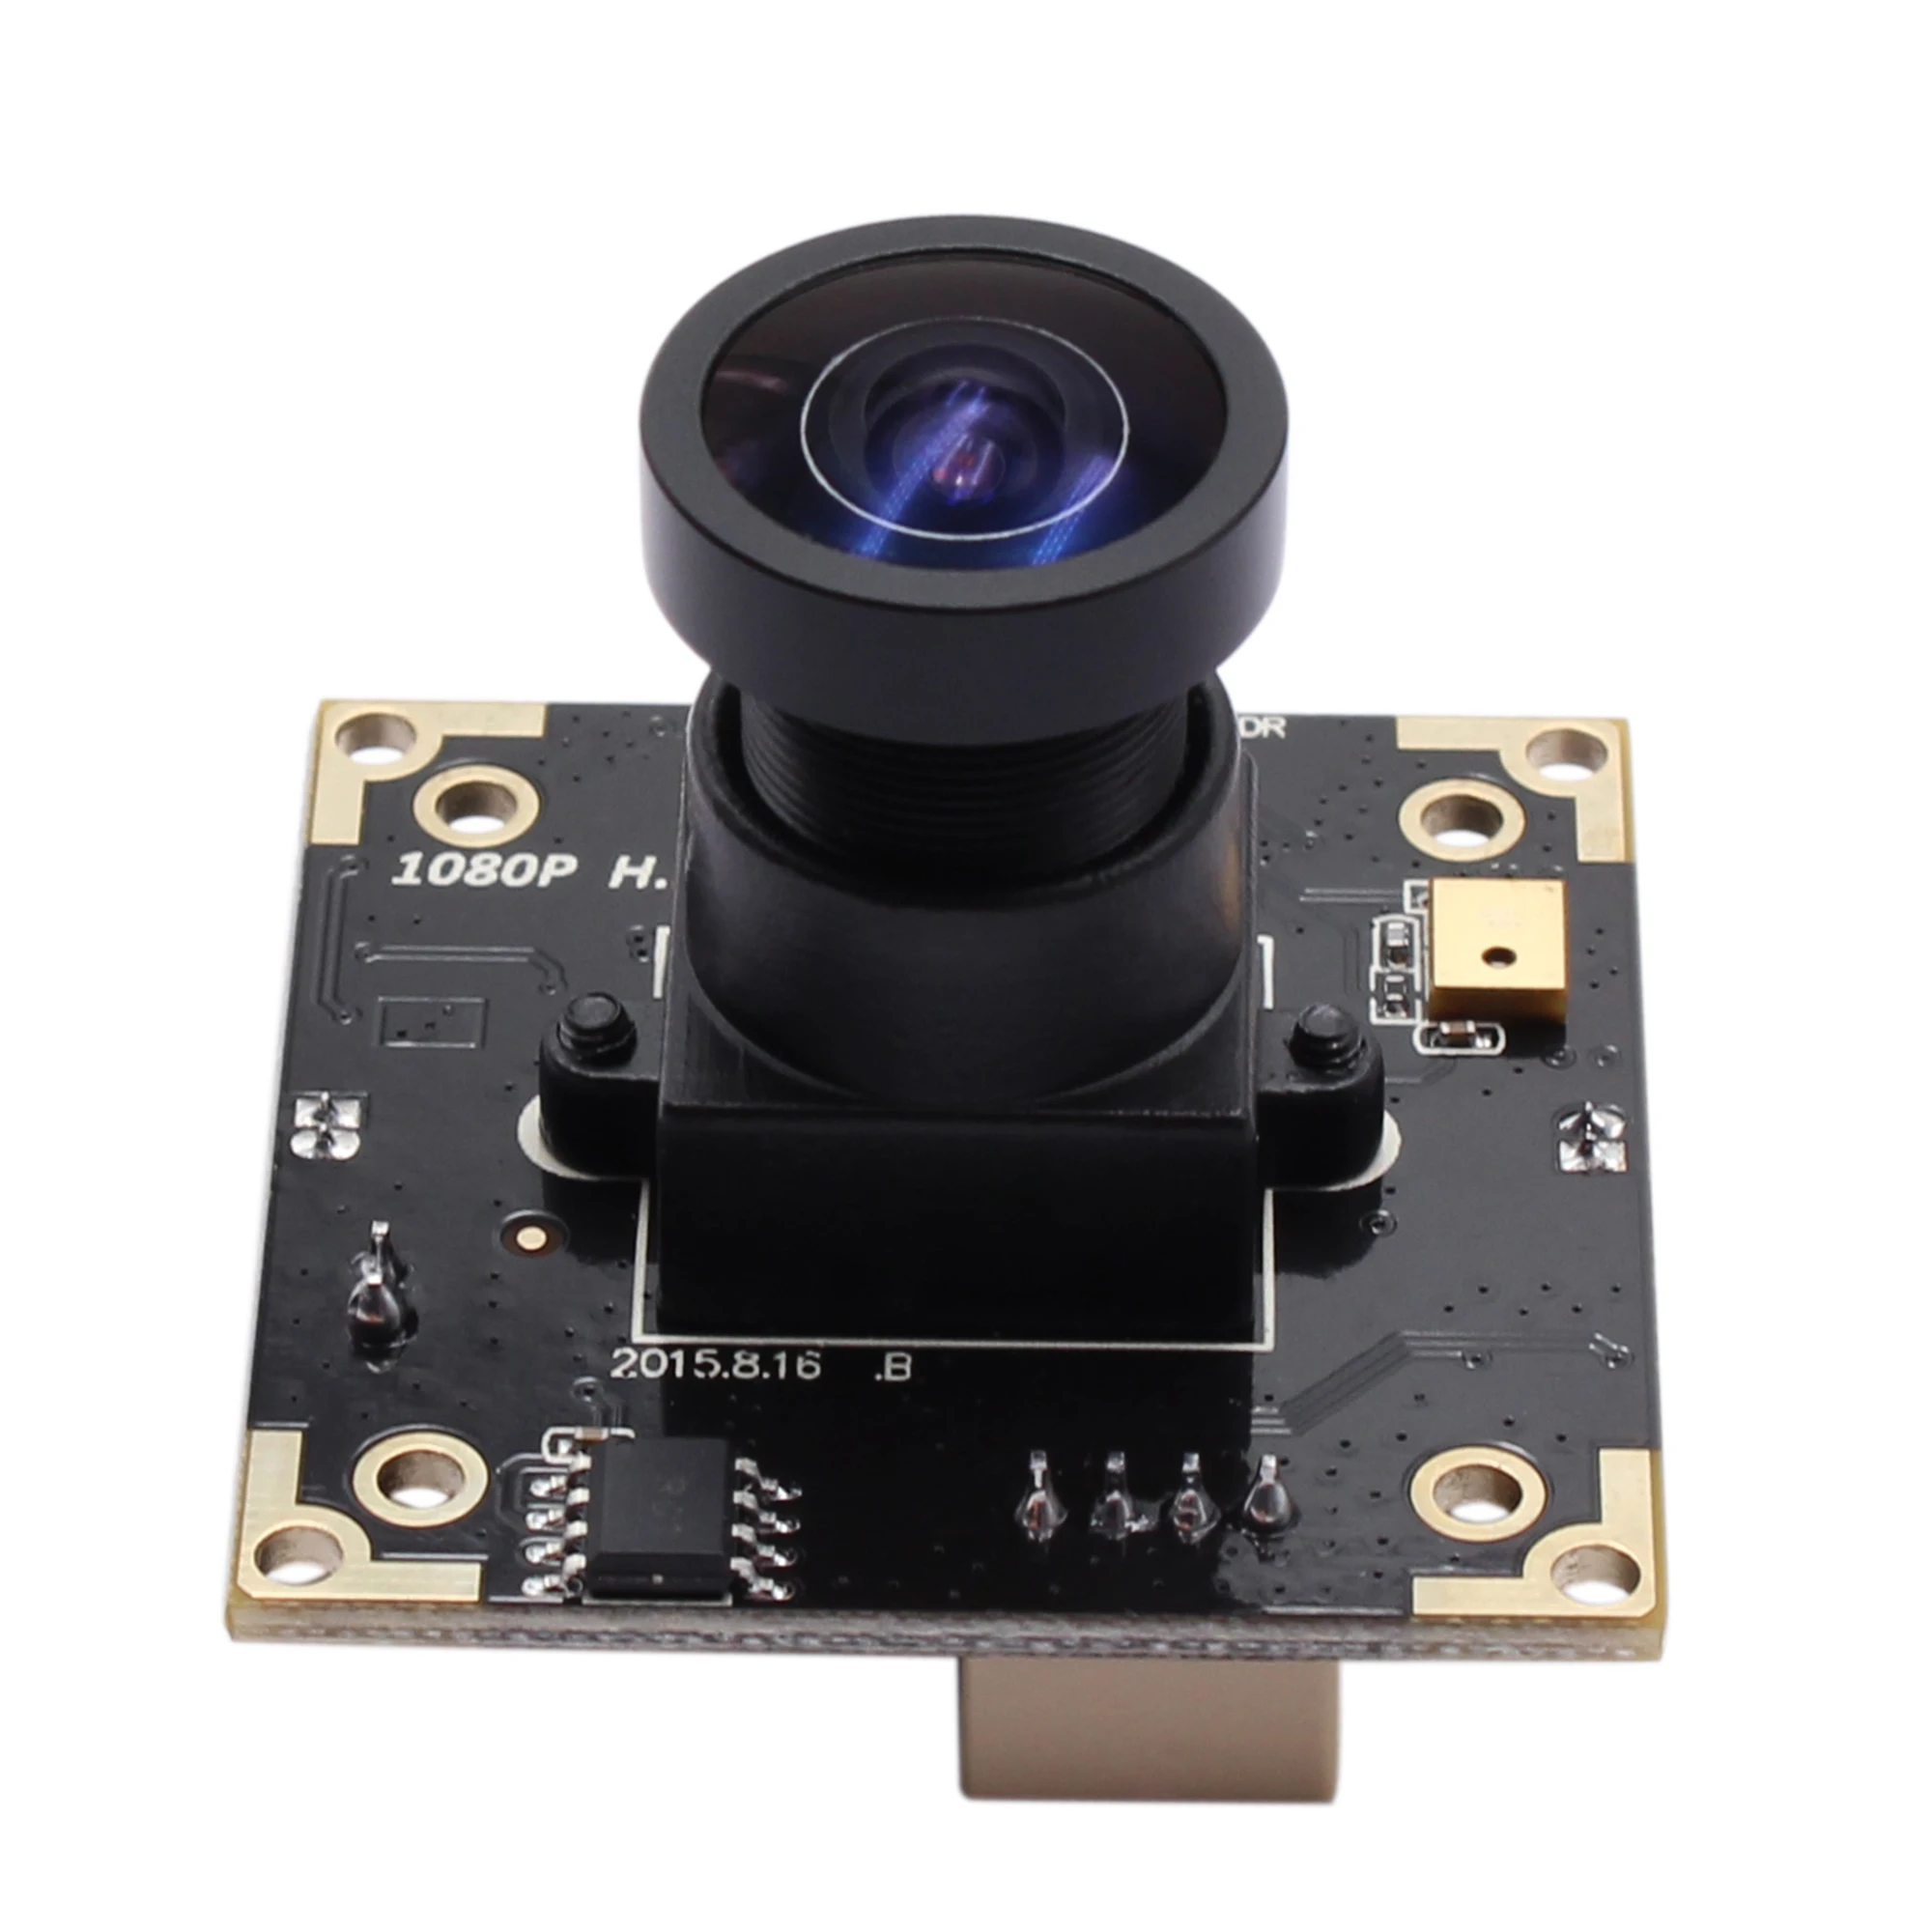 Модуль USB-камеры ELP 3MP AR0331WDR со 100-градусным объективом с низким искажением для видеонаблюдения за въездом на парковку